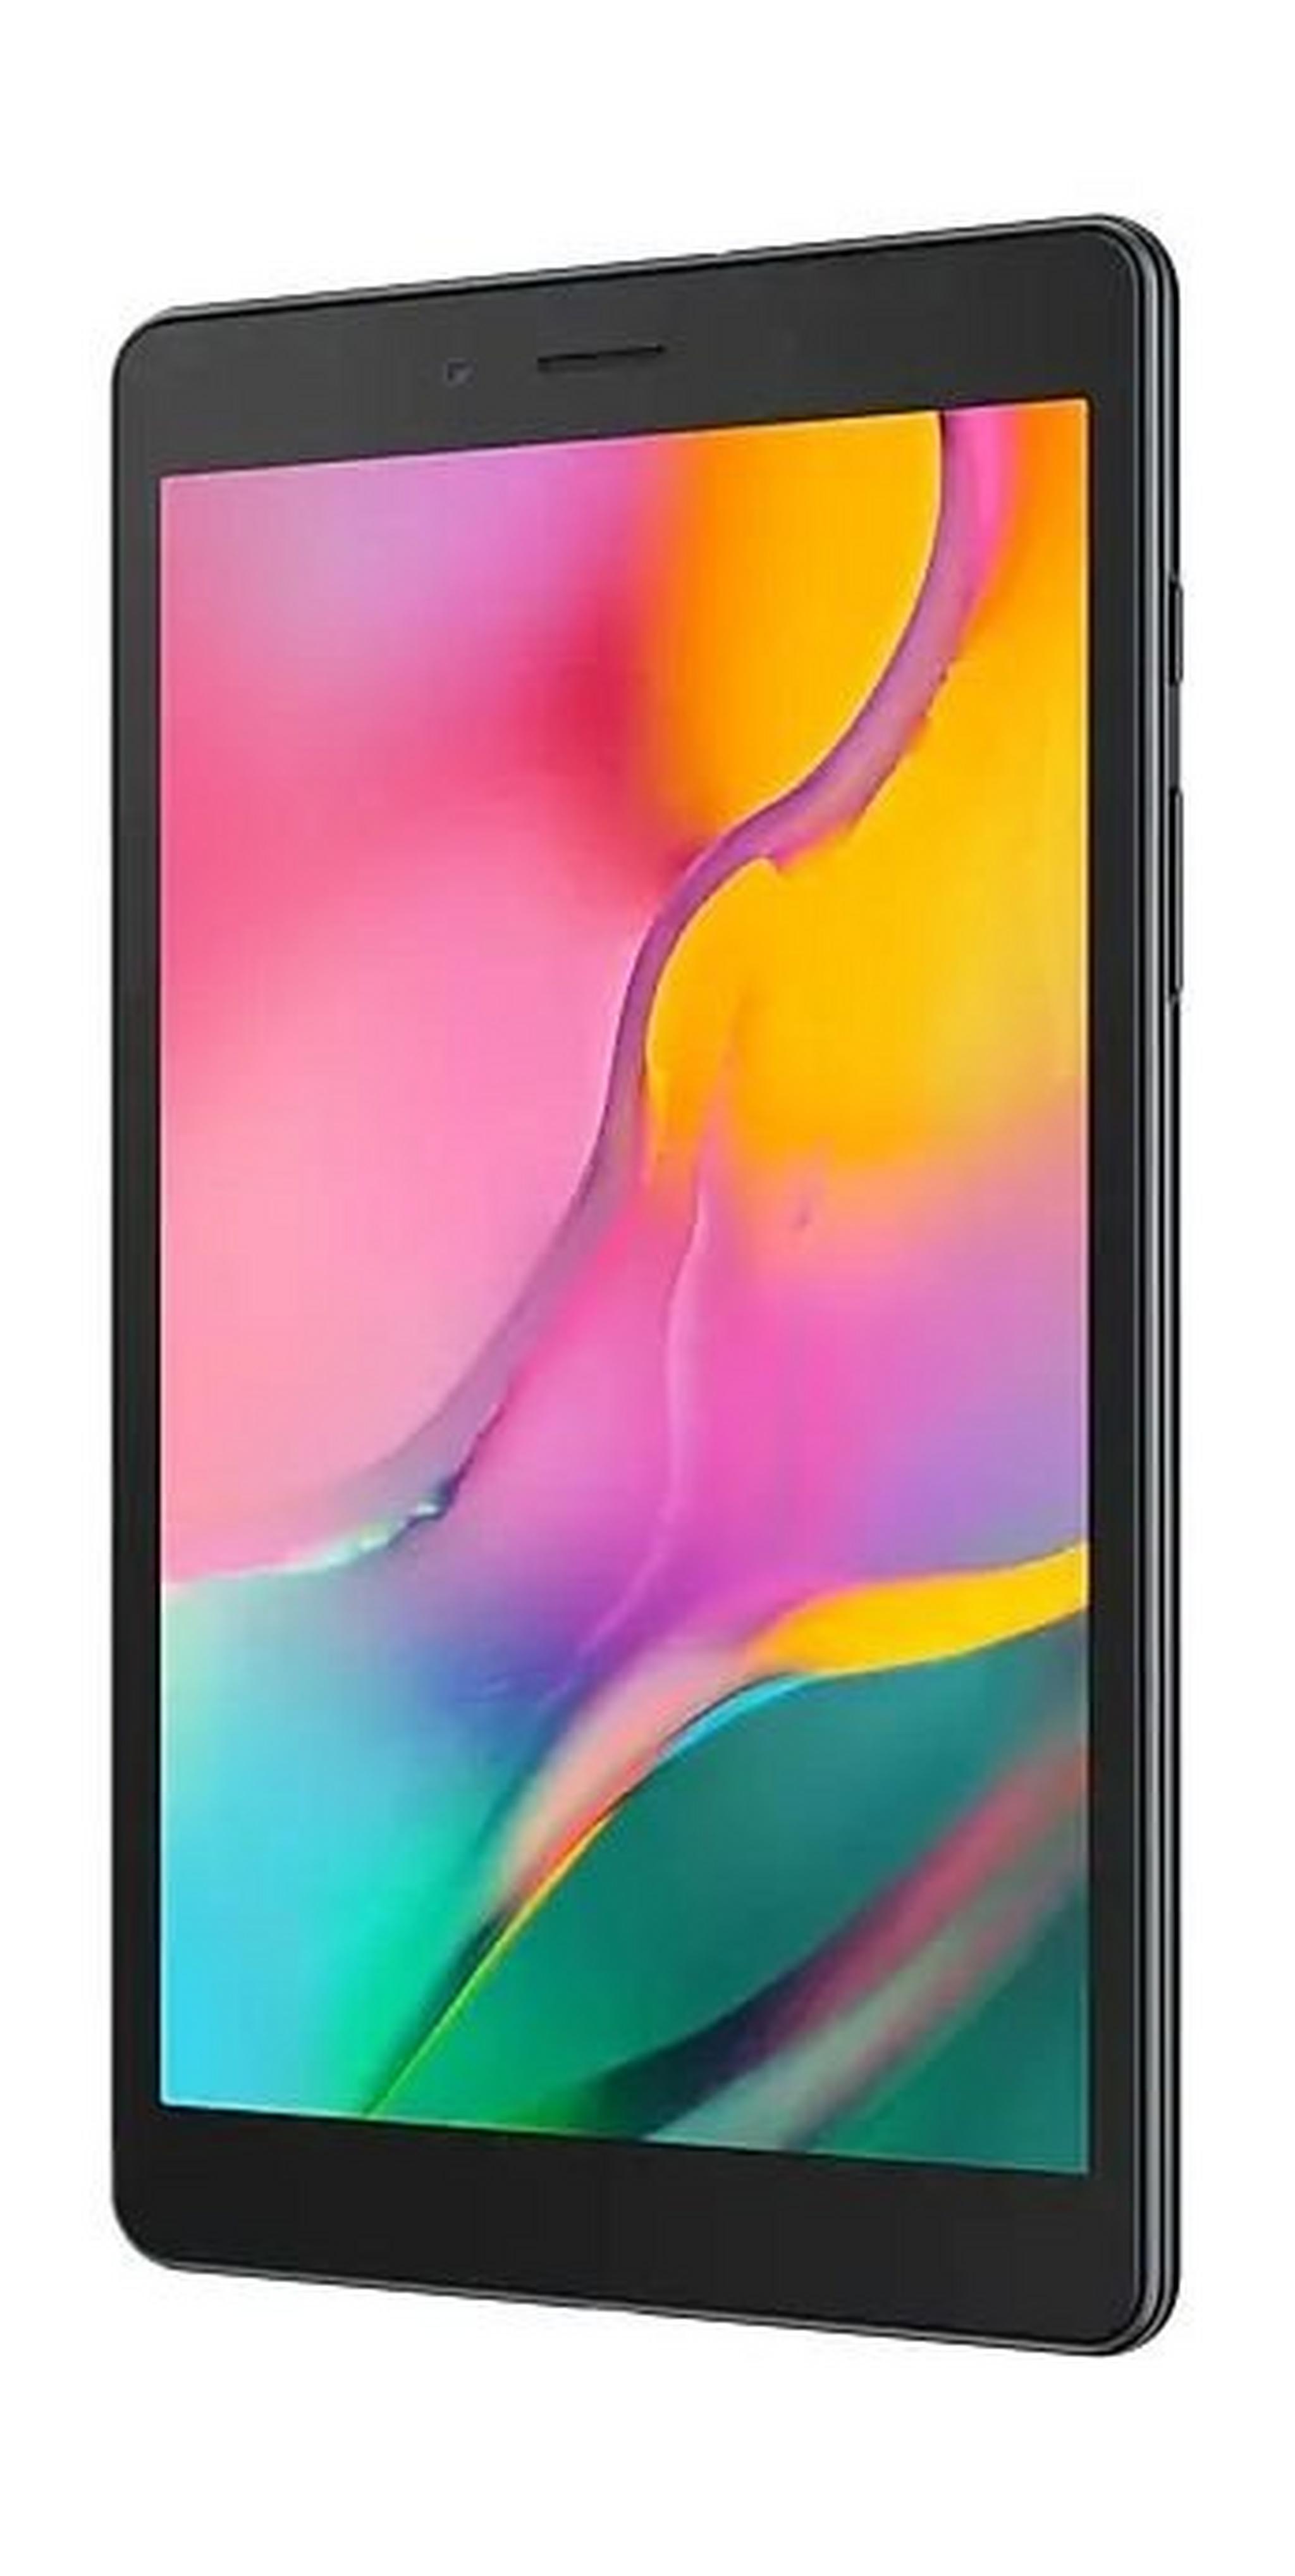 SAMSUNG Galaxy Tab A 2019 8-inch 32GB Wi-Fi Only Tablet - Black